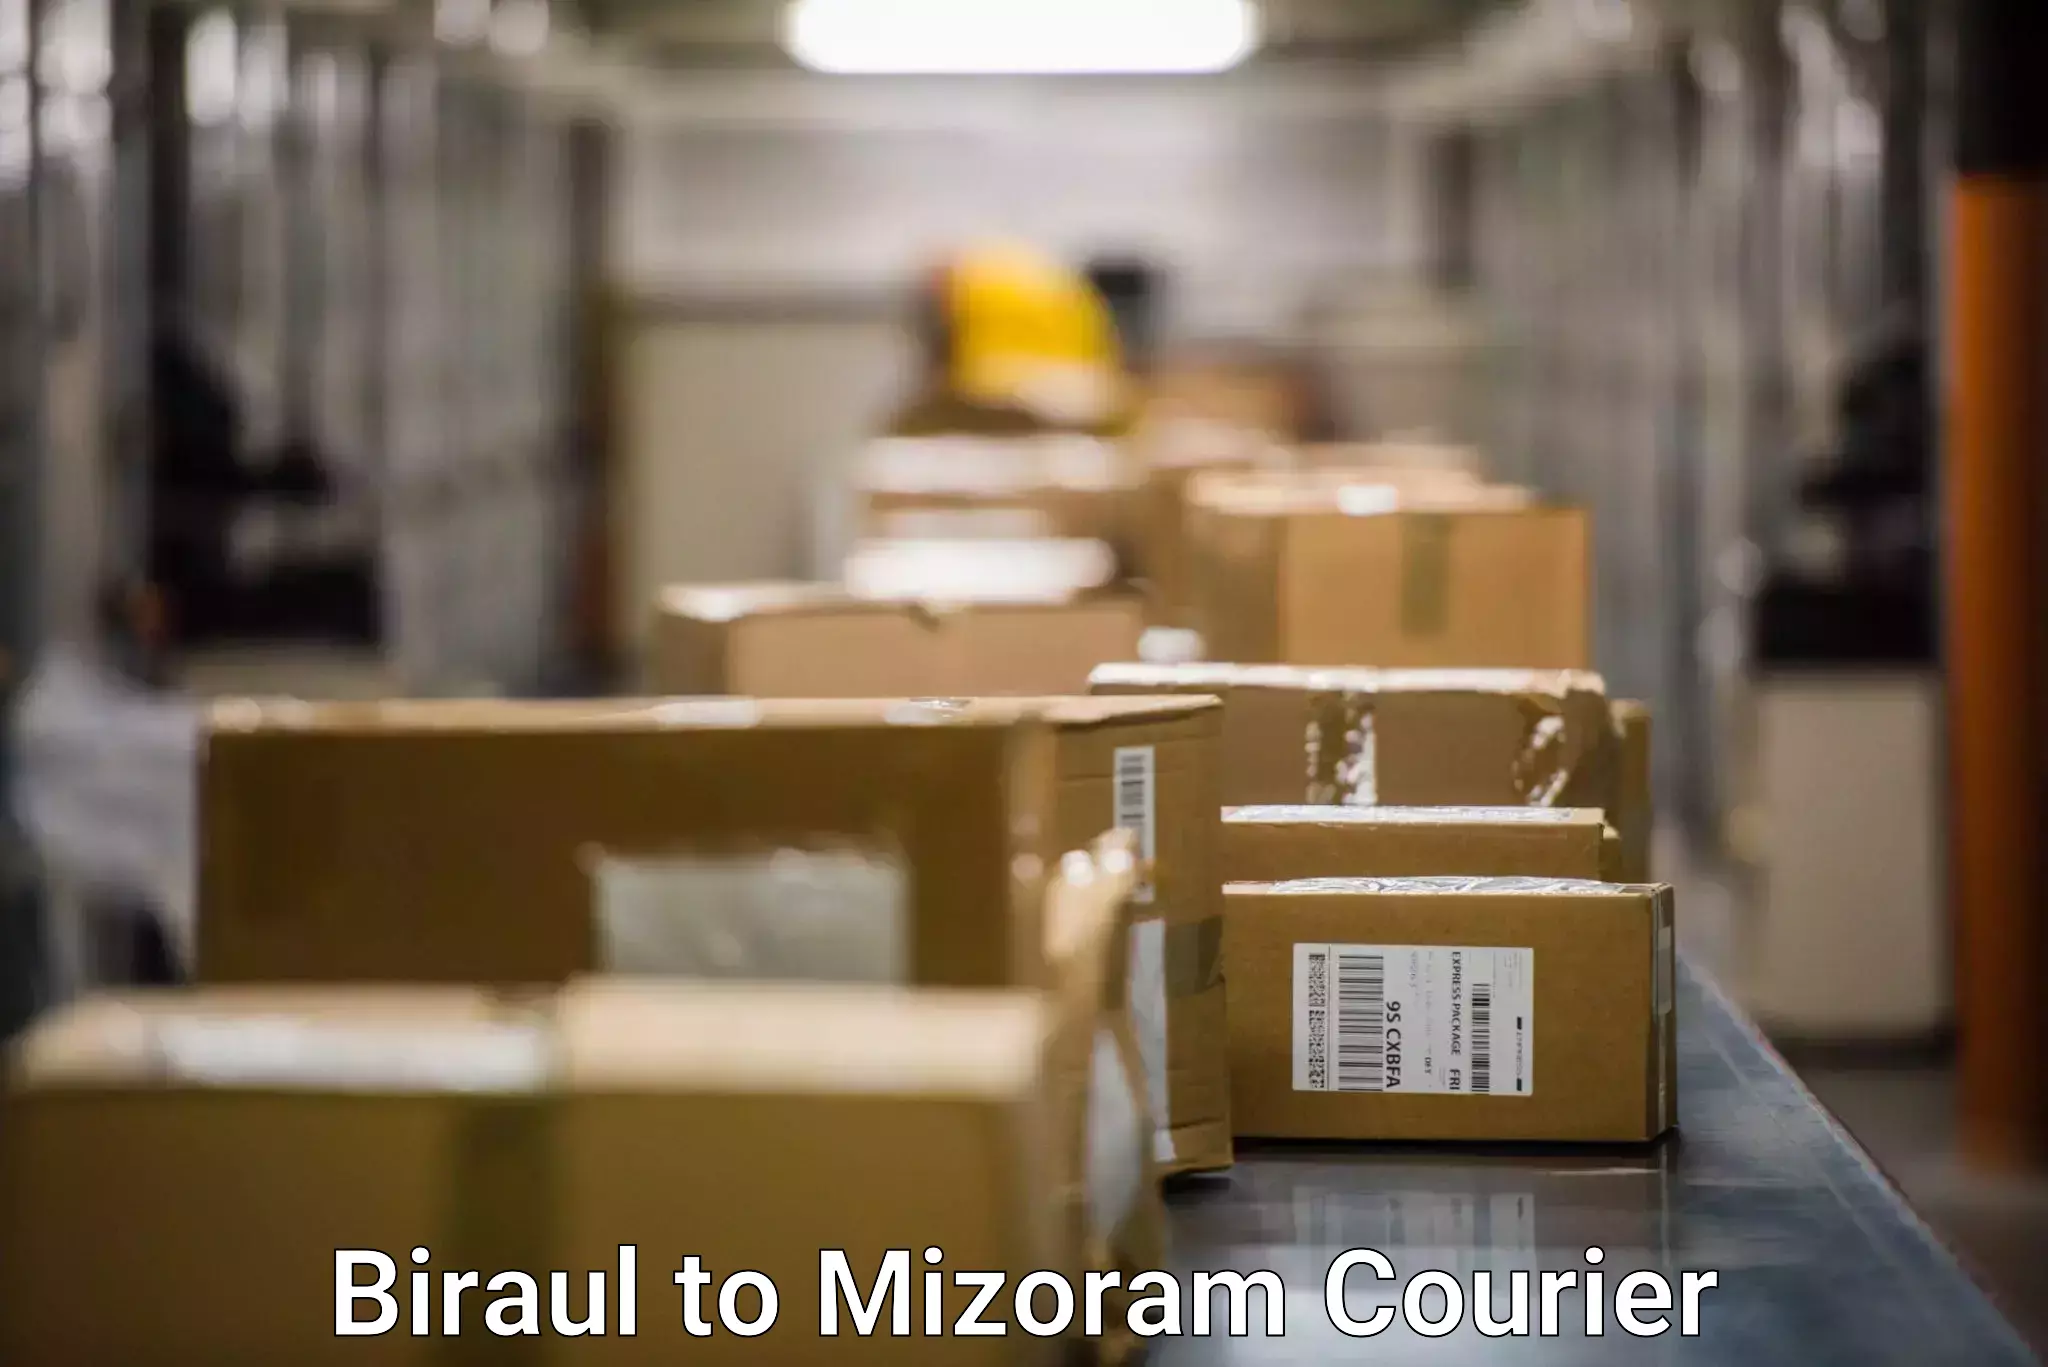 Nationwide shipping capabilities Biraul to Mizoram